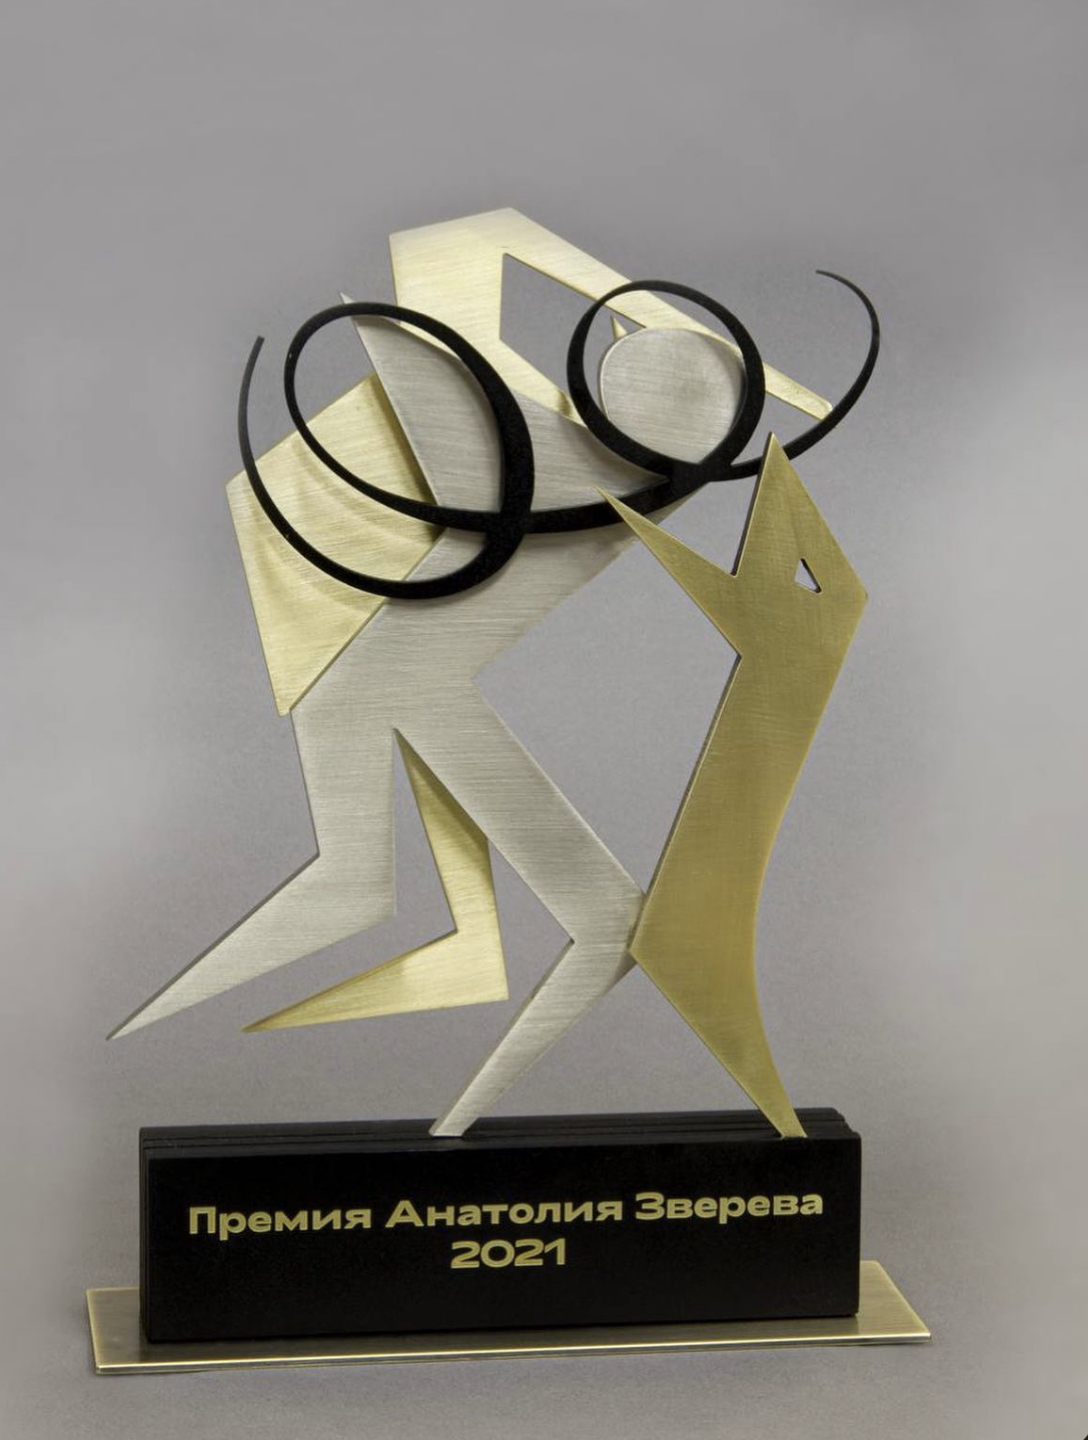 Объявлены победители премии Анатолия Зверева